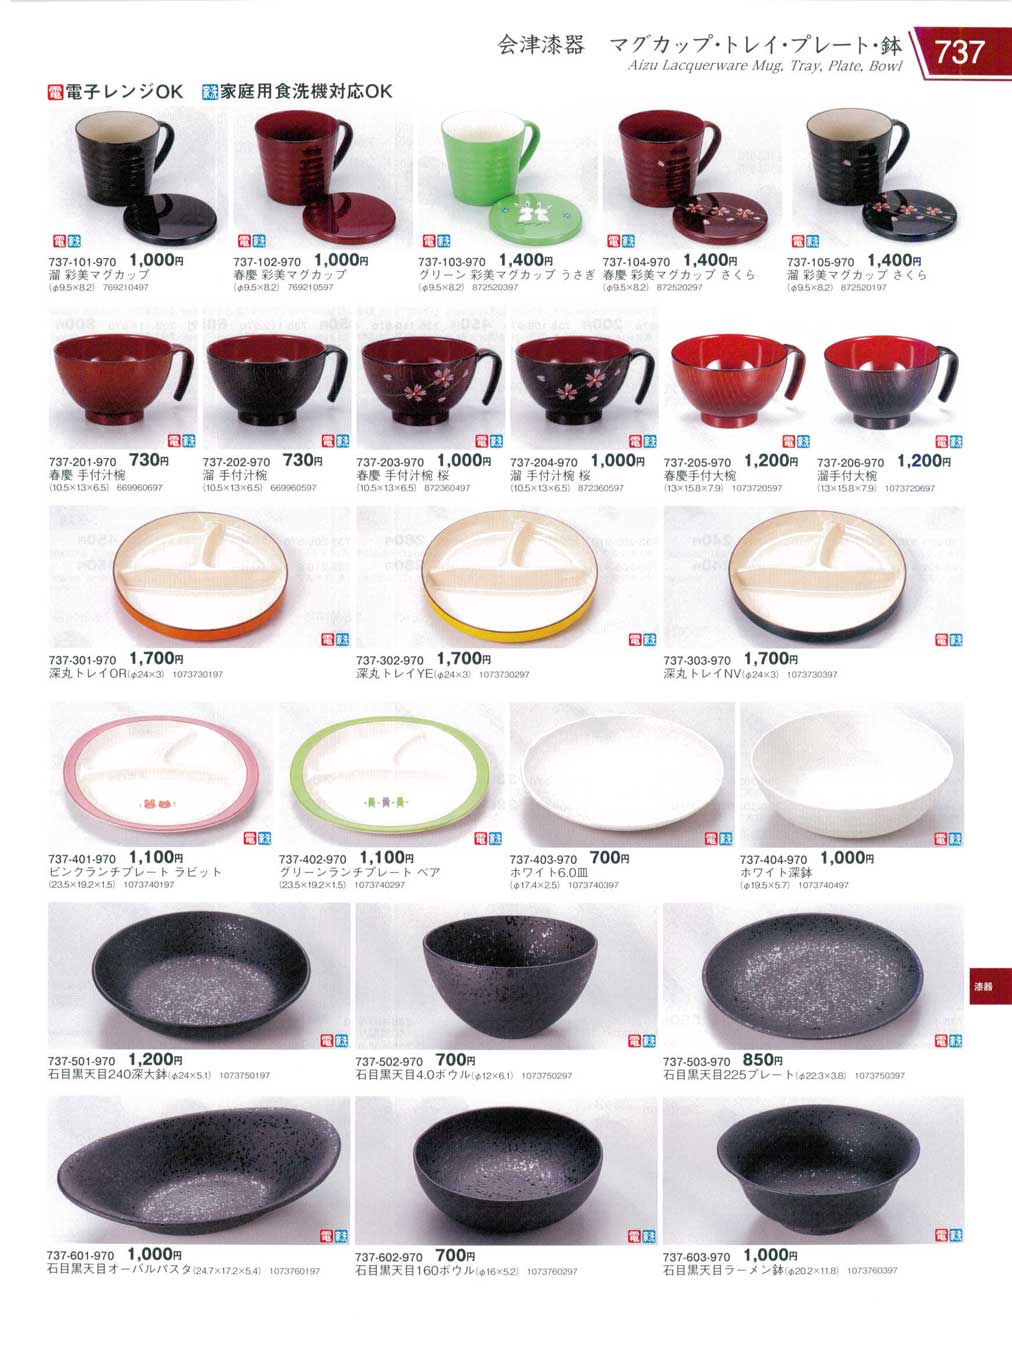 食器 会津漆器 マグカップ・トレイ・プレート・鉢Aizu Lacquerware Mug 